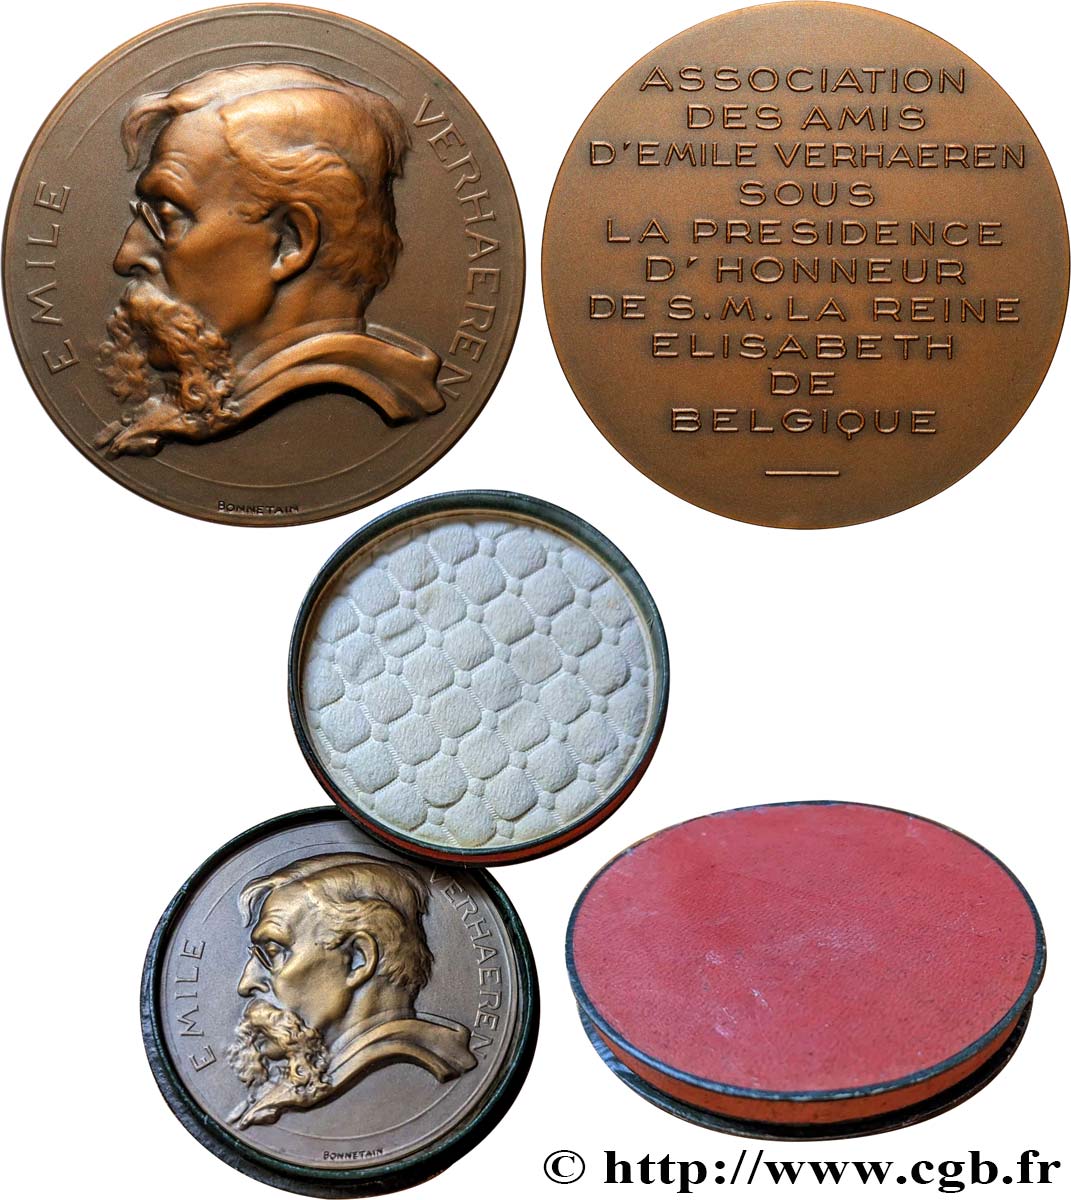 BELGIUM - KINGDOM OF BELGIUM - ALBERT I Médaille, Association des amis d’Emile Verhaeren AU